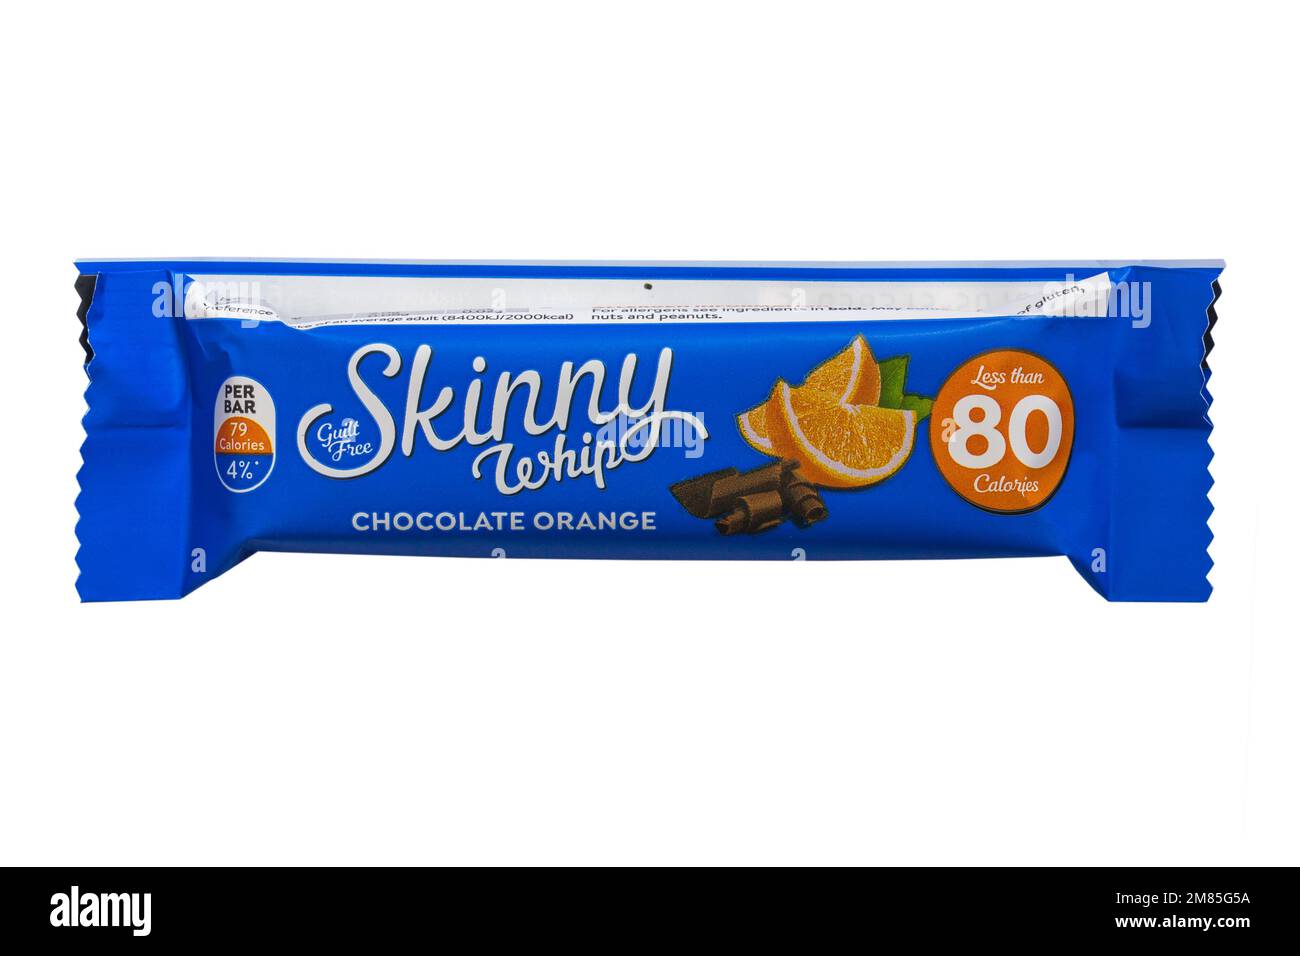 Gefühllose, dünne, hippe Schokolade, orangefarbener Snackriegel mit weniger als 80 Kalorien, isoliert auf weißem Hintergrund Stockfoto